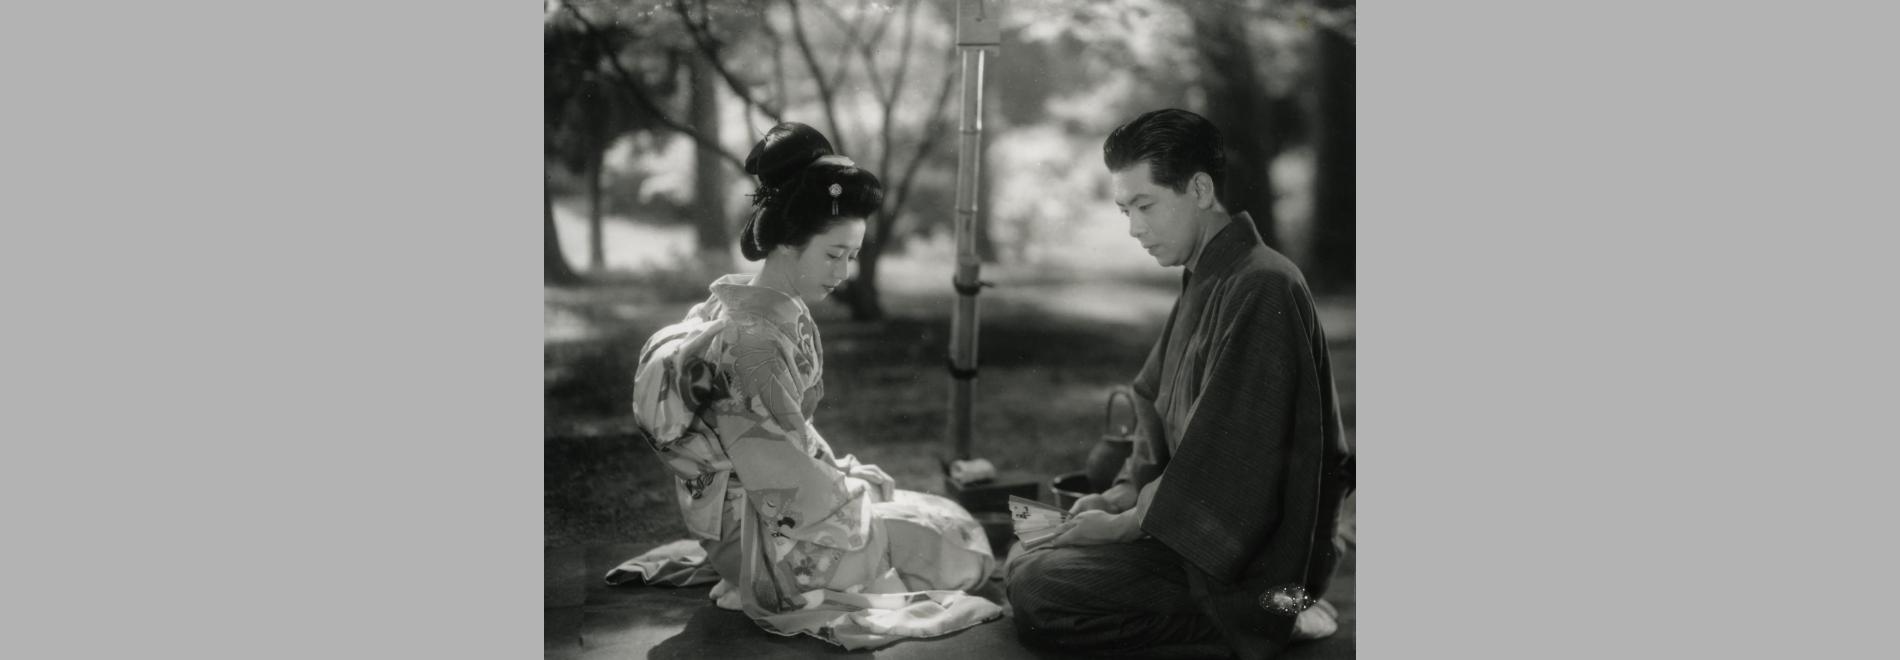 Oyû-sama / La señorita Oyu (Kenji Mizoguchi, 1951)